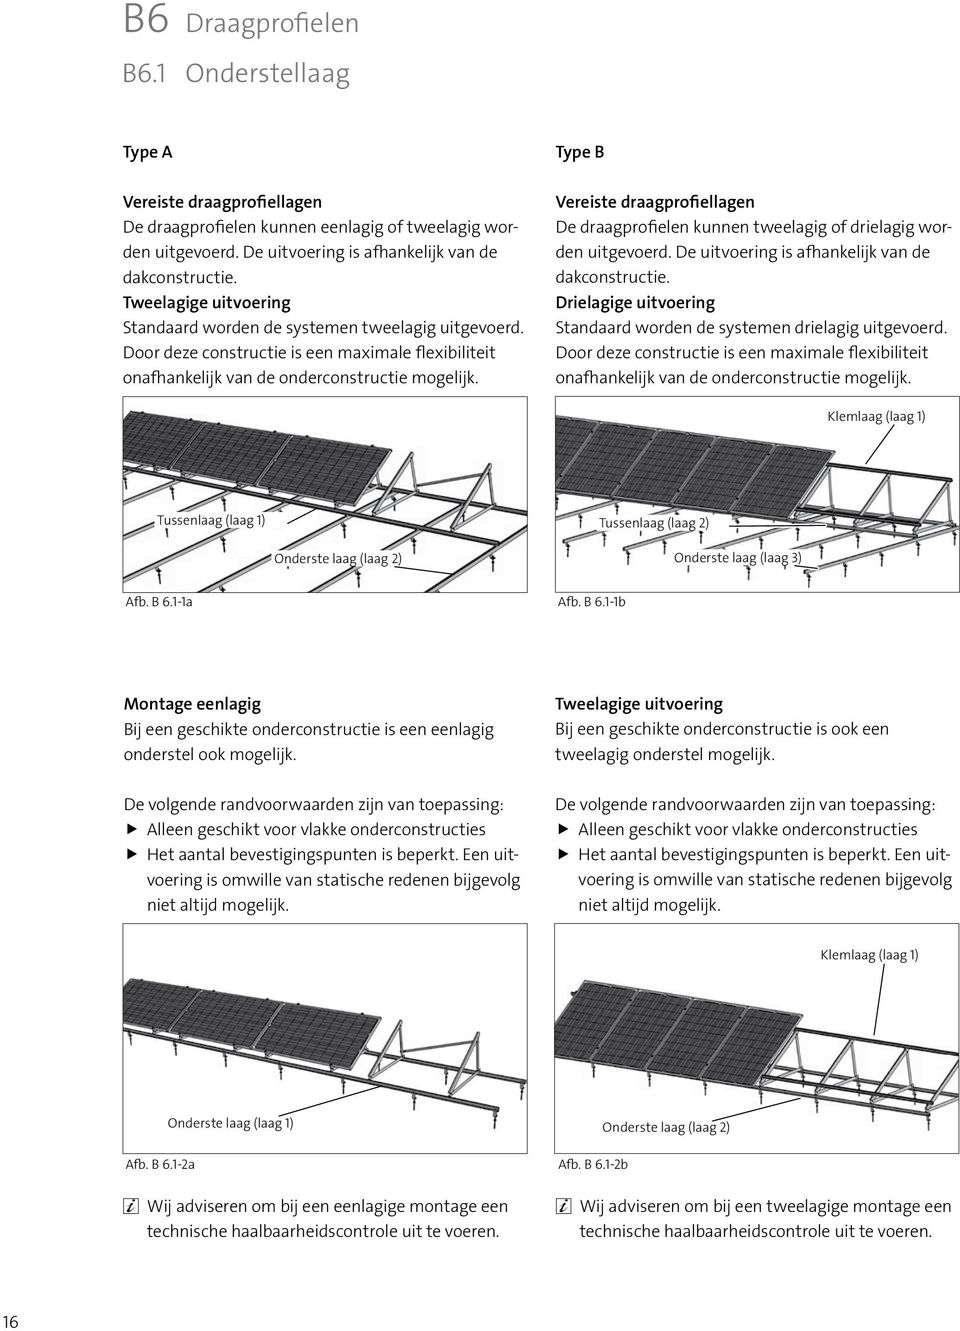 Type B Vereiste draagprofiellagen De draagprofielen kunnen tweelagig of drielagig worden uitgevoerd. De uitvoering is afhankelijk van de dakconstructie.